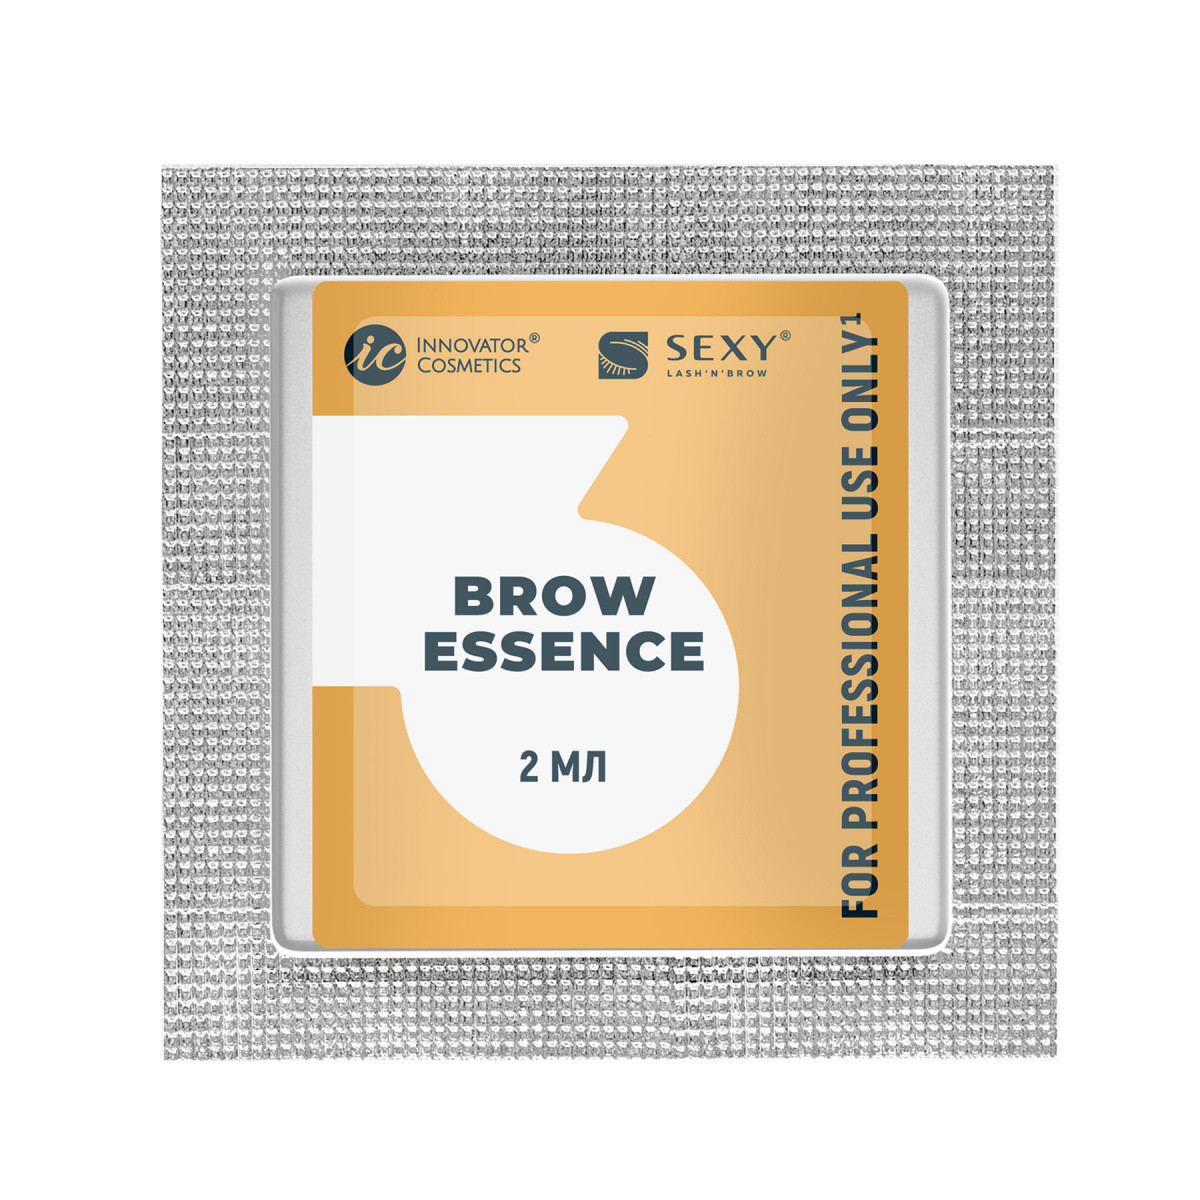 SEXY BROW PERM Саше с составом #3 для долговременной укладки бровей BROW ESSENCE, 2мл